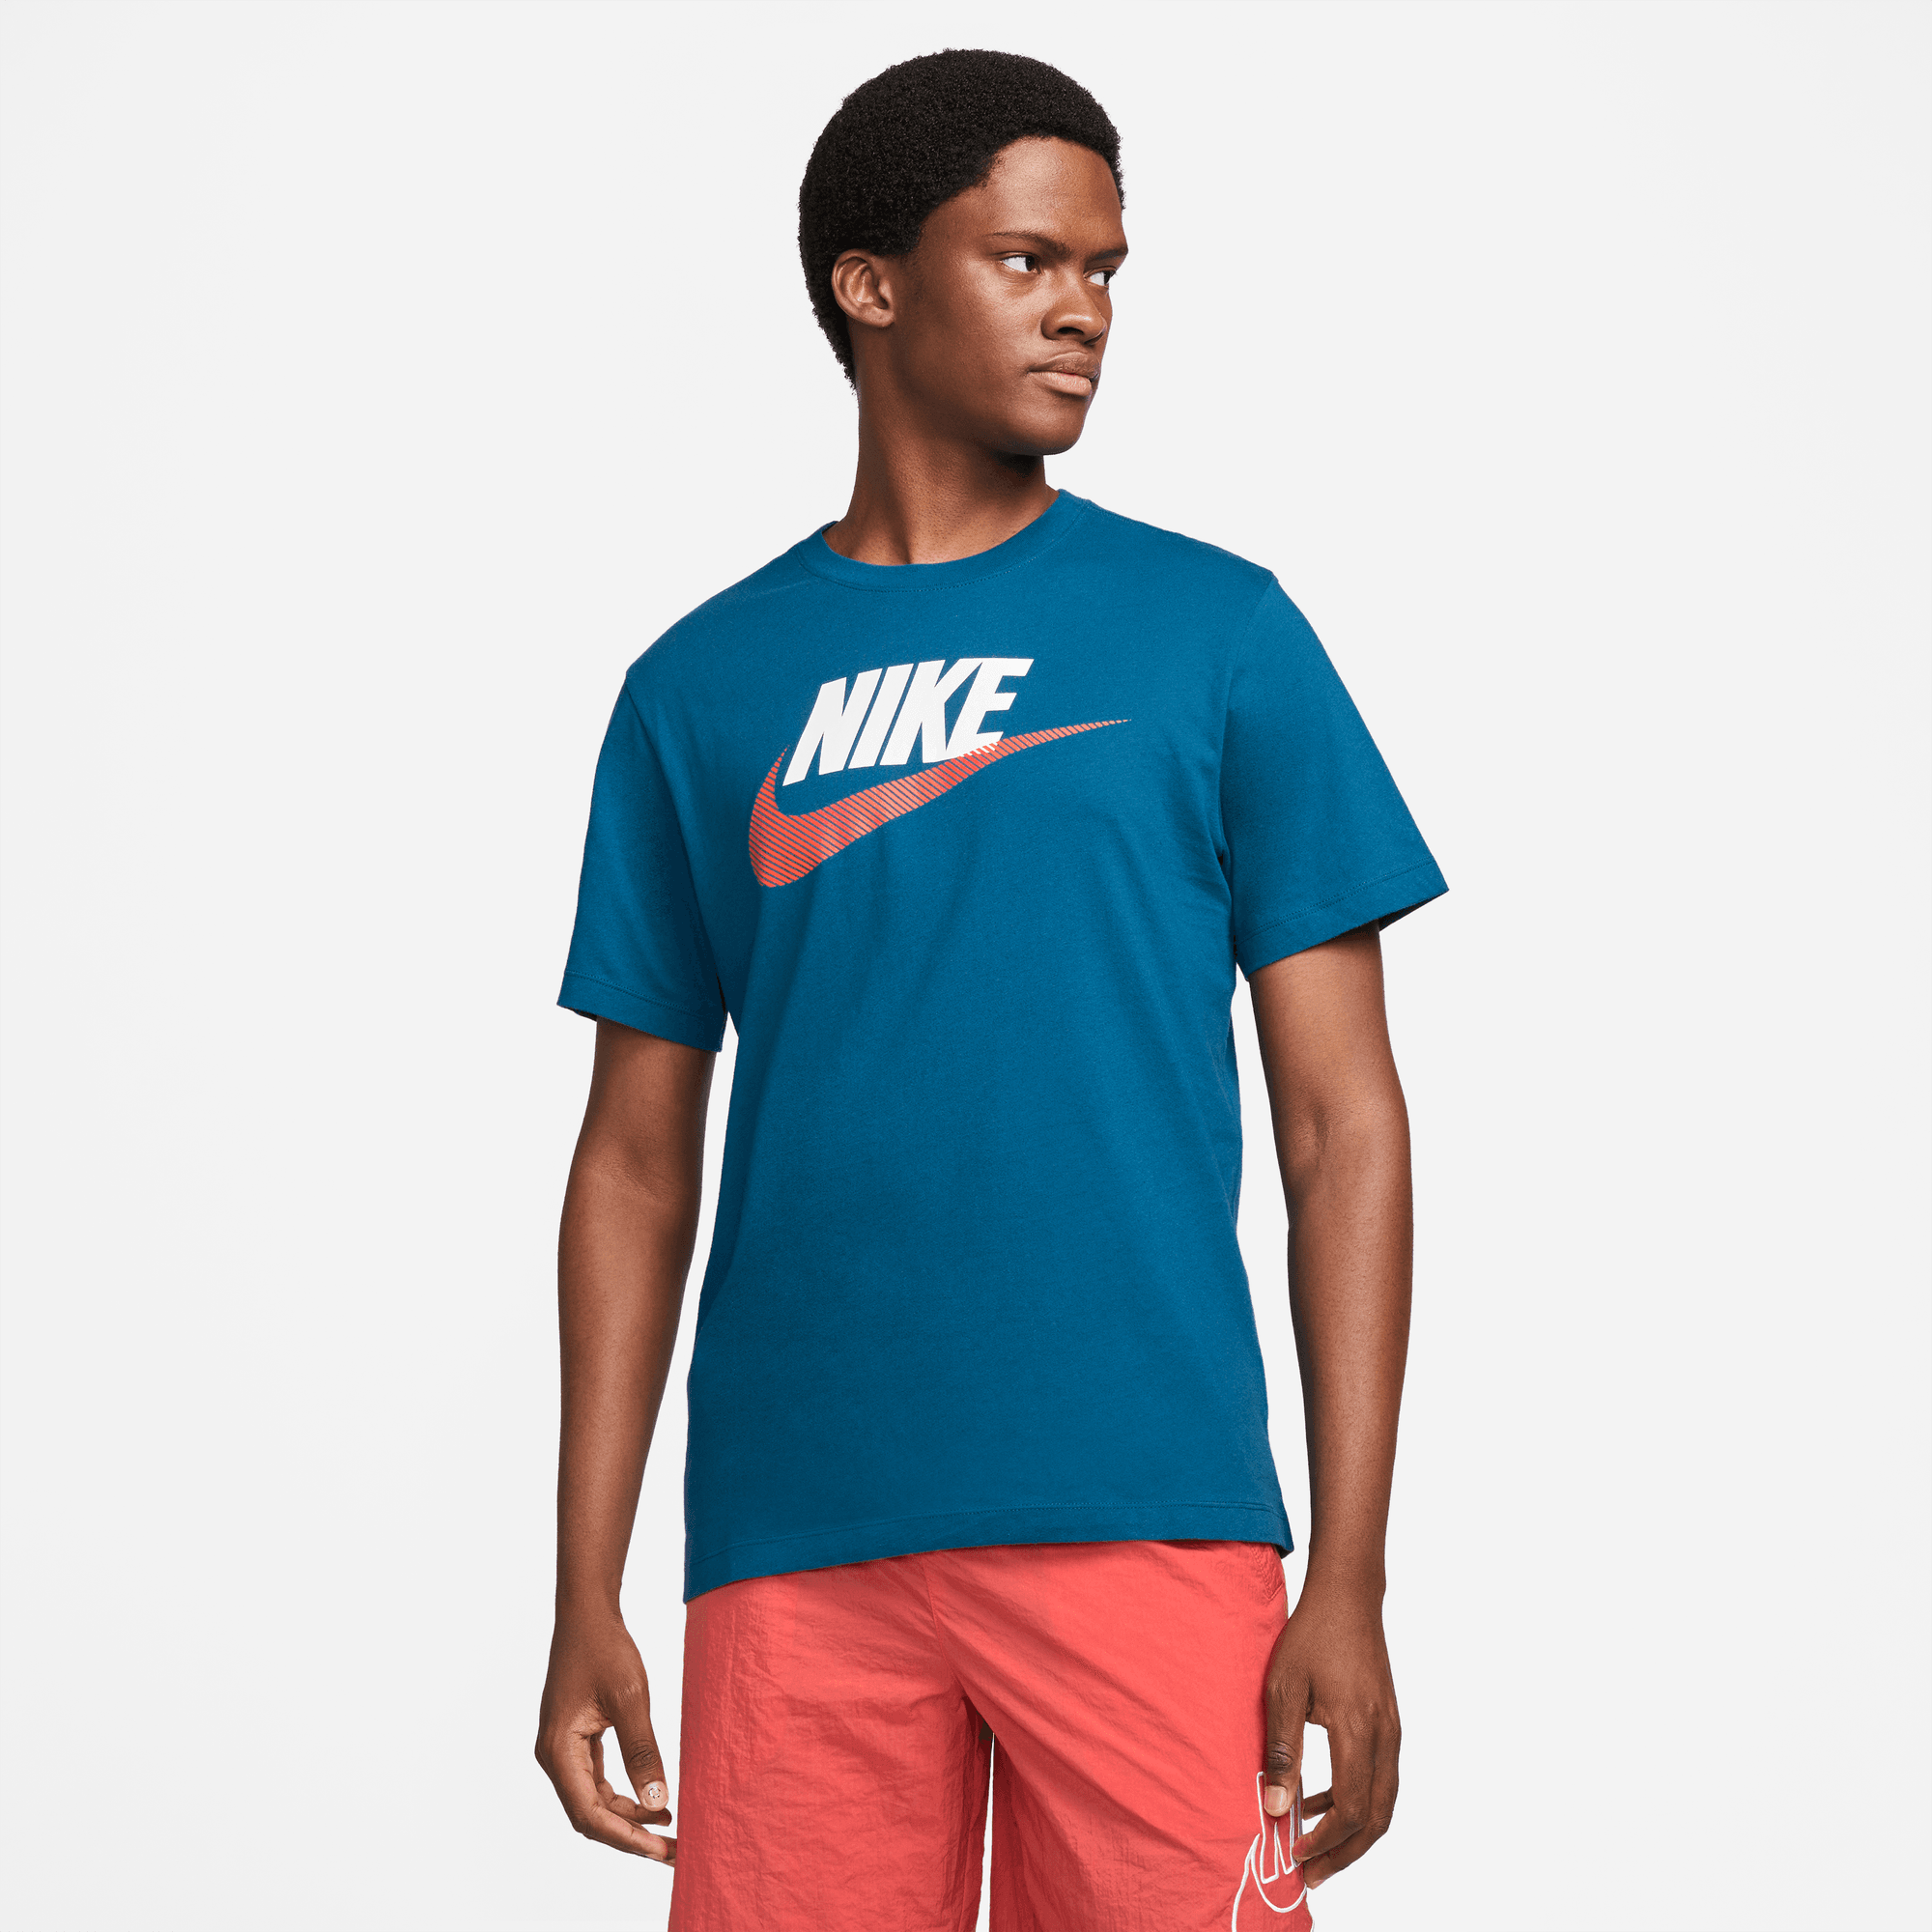 Polera Nike Color Fuxia